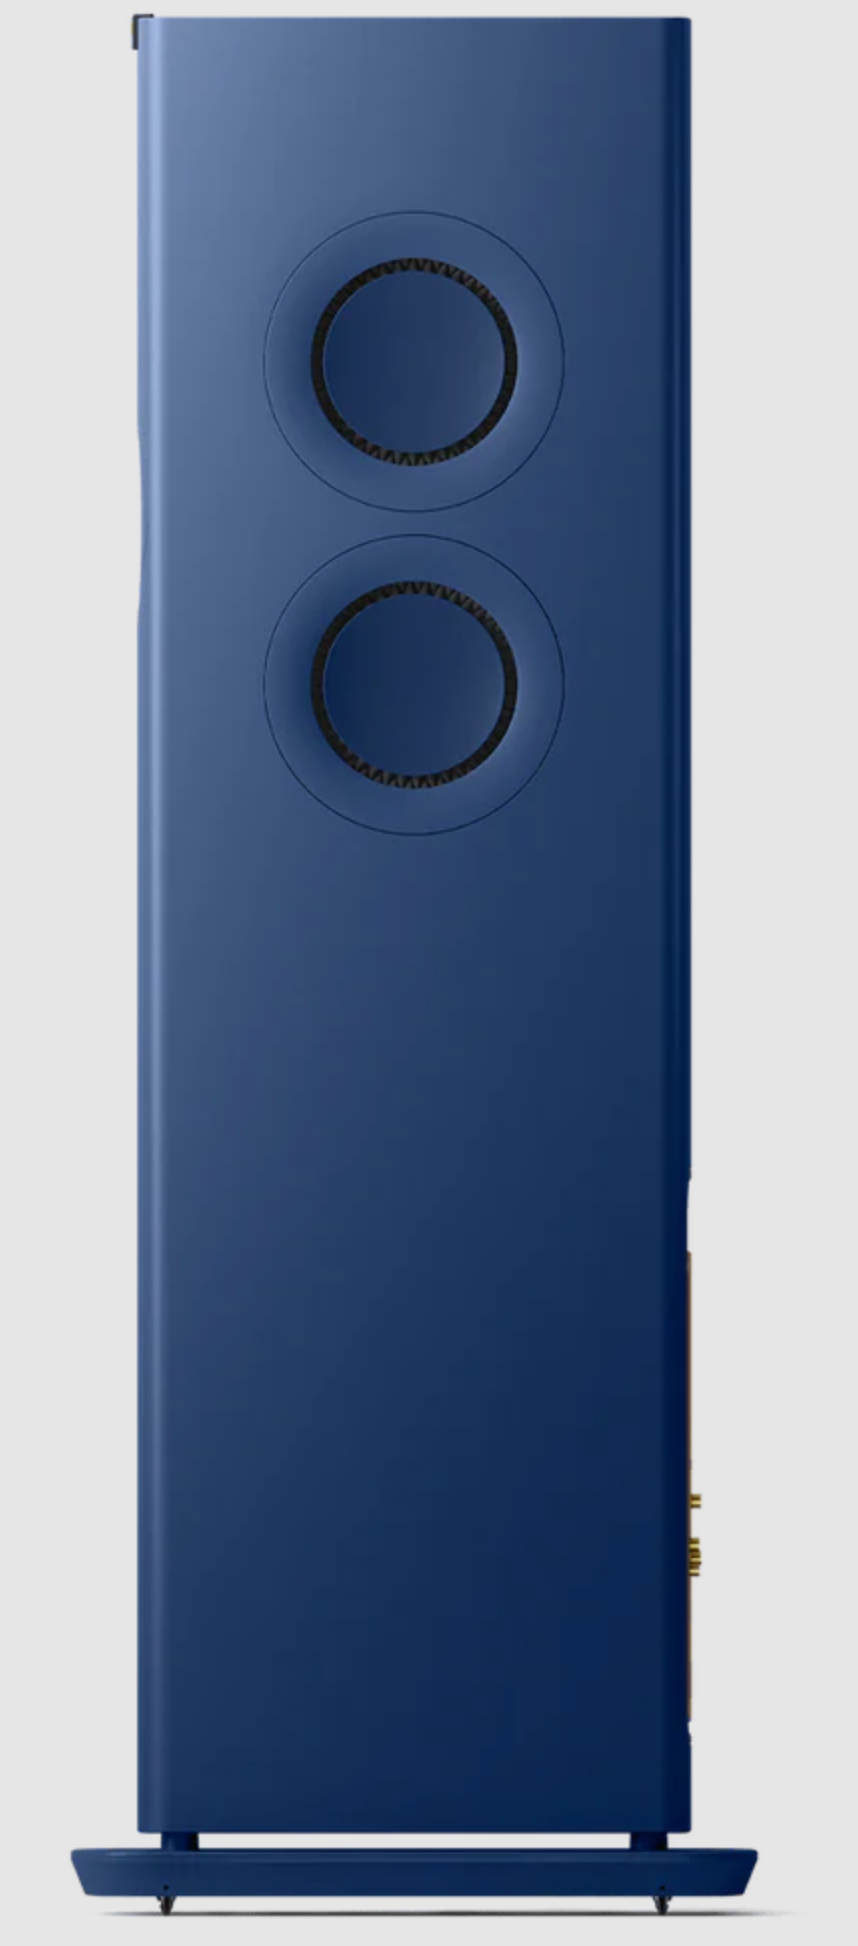 KEF LS60 Wireless Floorstanding Speakers Speakers in Royal Blue. Individual speaker side image